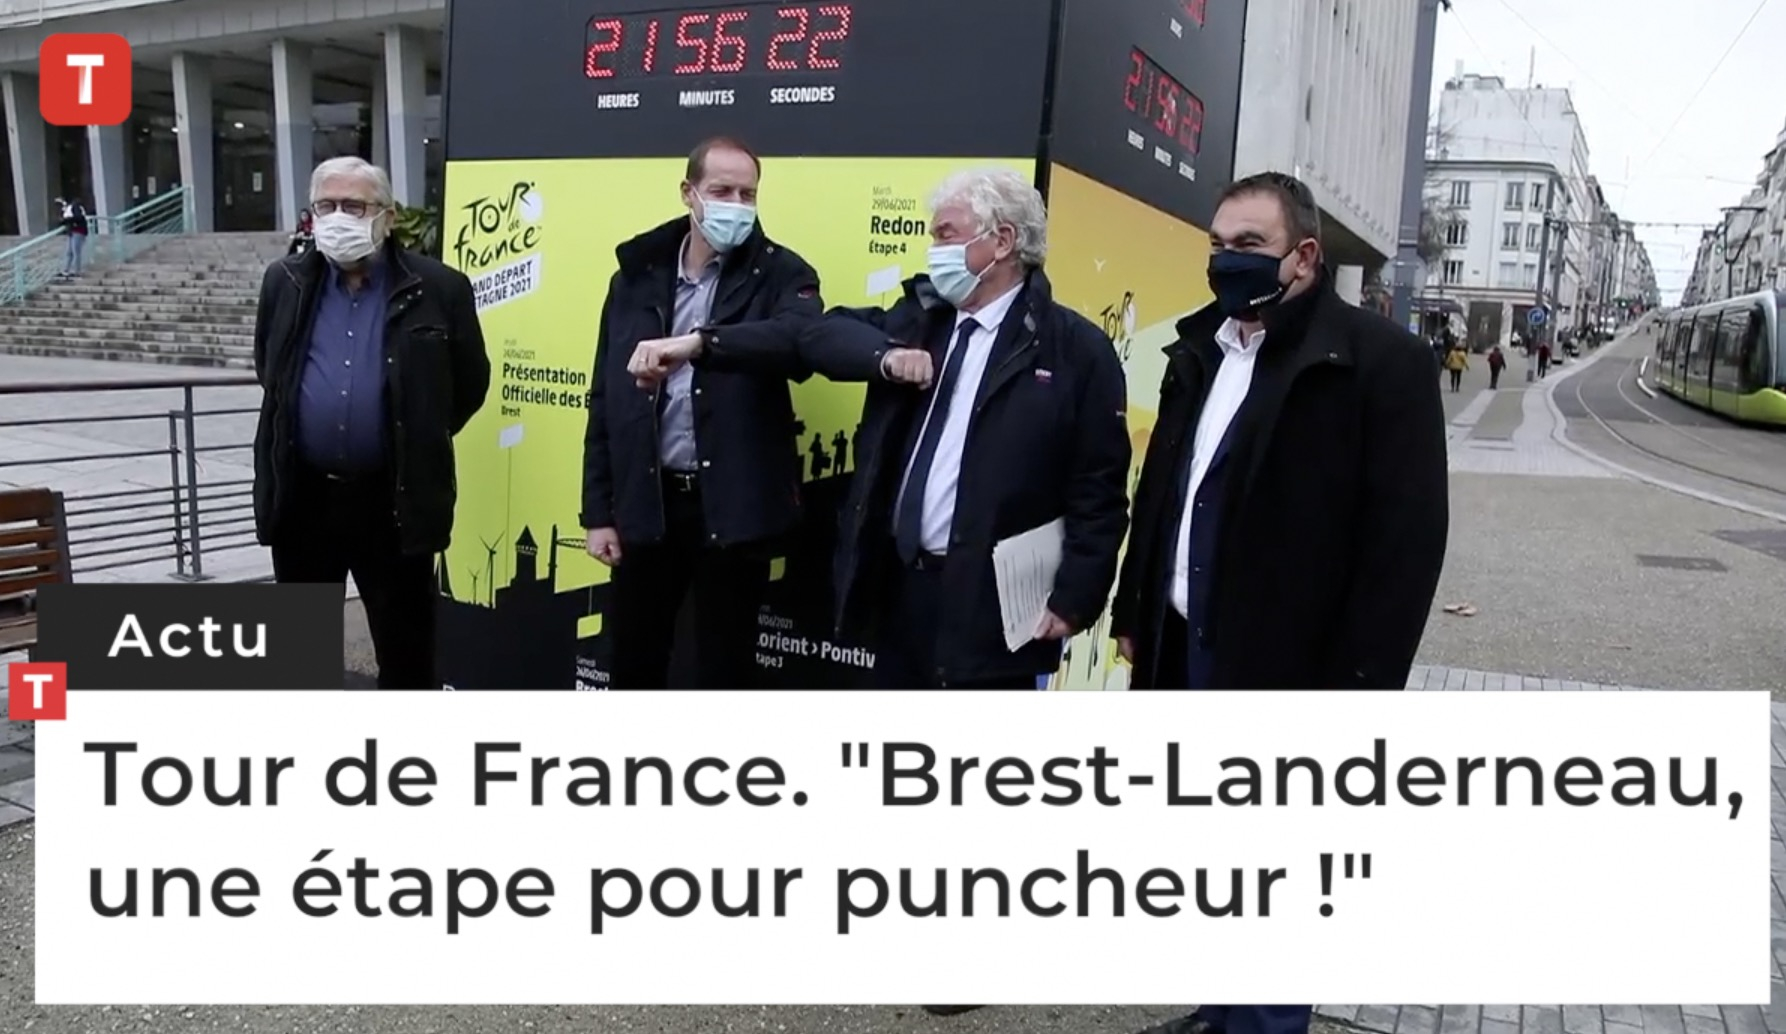 Tour de France. "Brest-Landerneau, une étape pour puncheur !" (Le Télégramme)